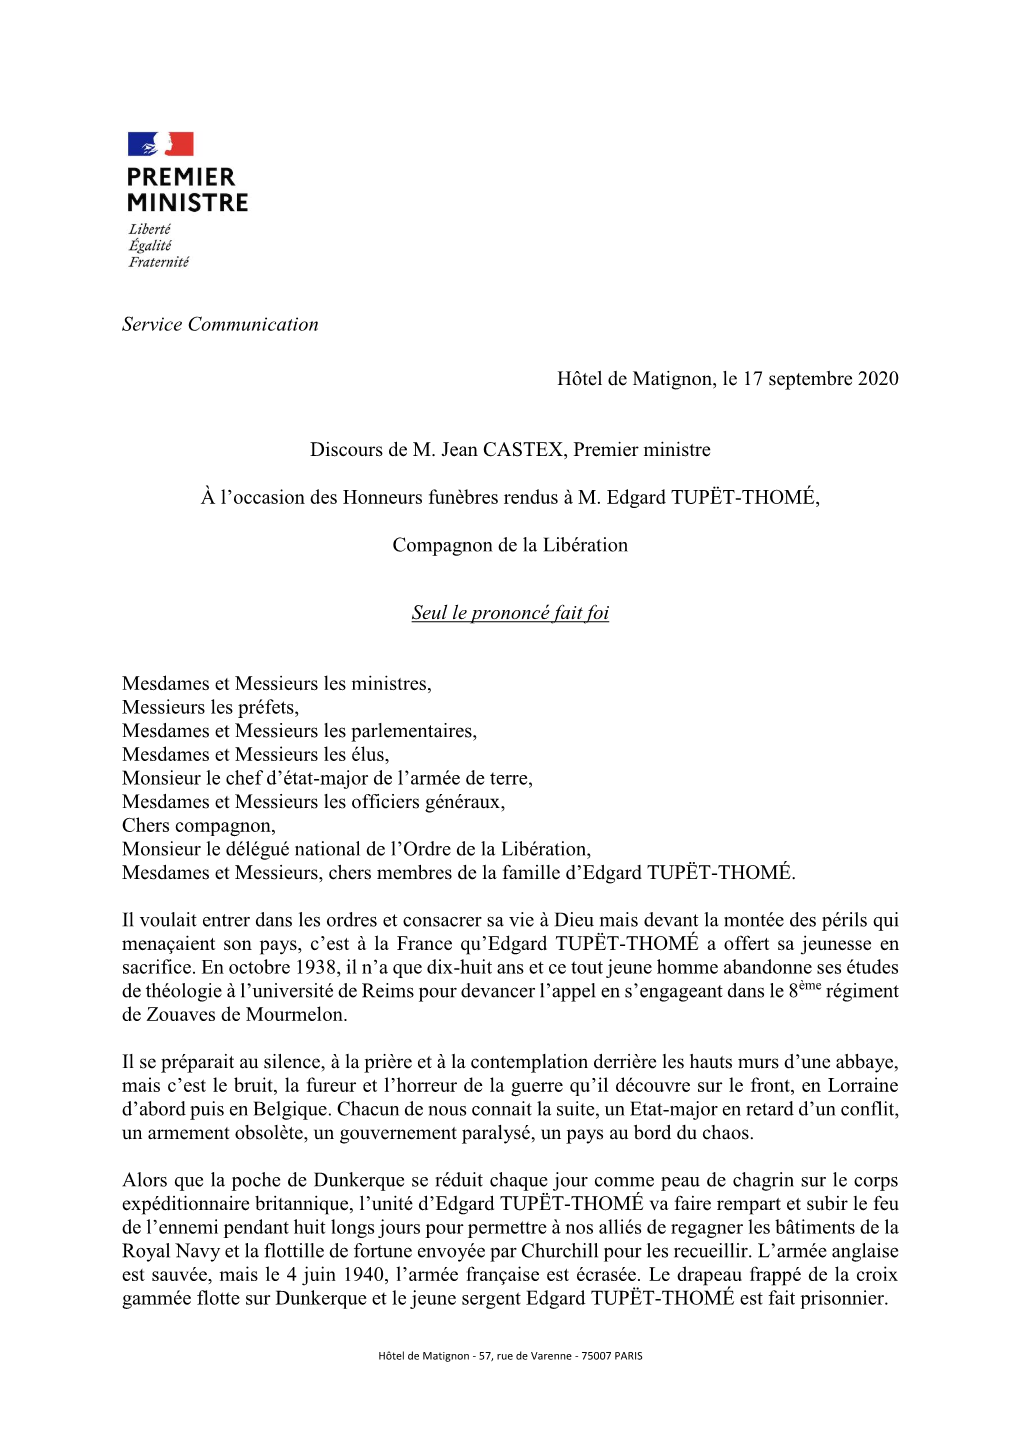 Service Communication Hôtel De Matignon, Le 17 Septembre 2020 Discours De M. Jean CASTEX, Premier Ministre À L'occasion